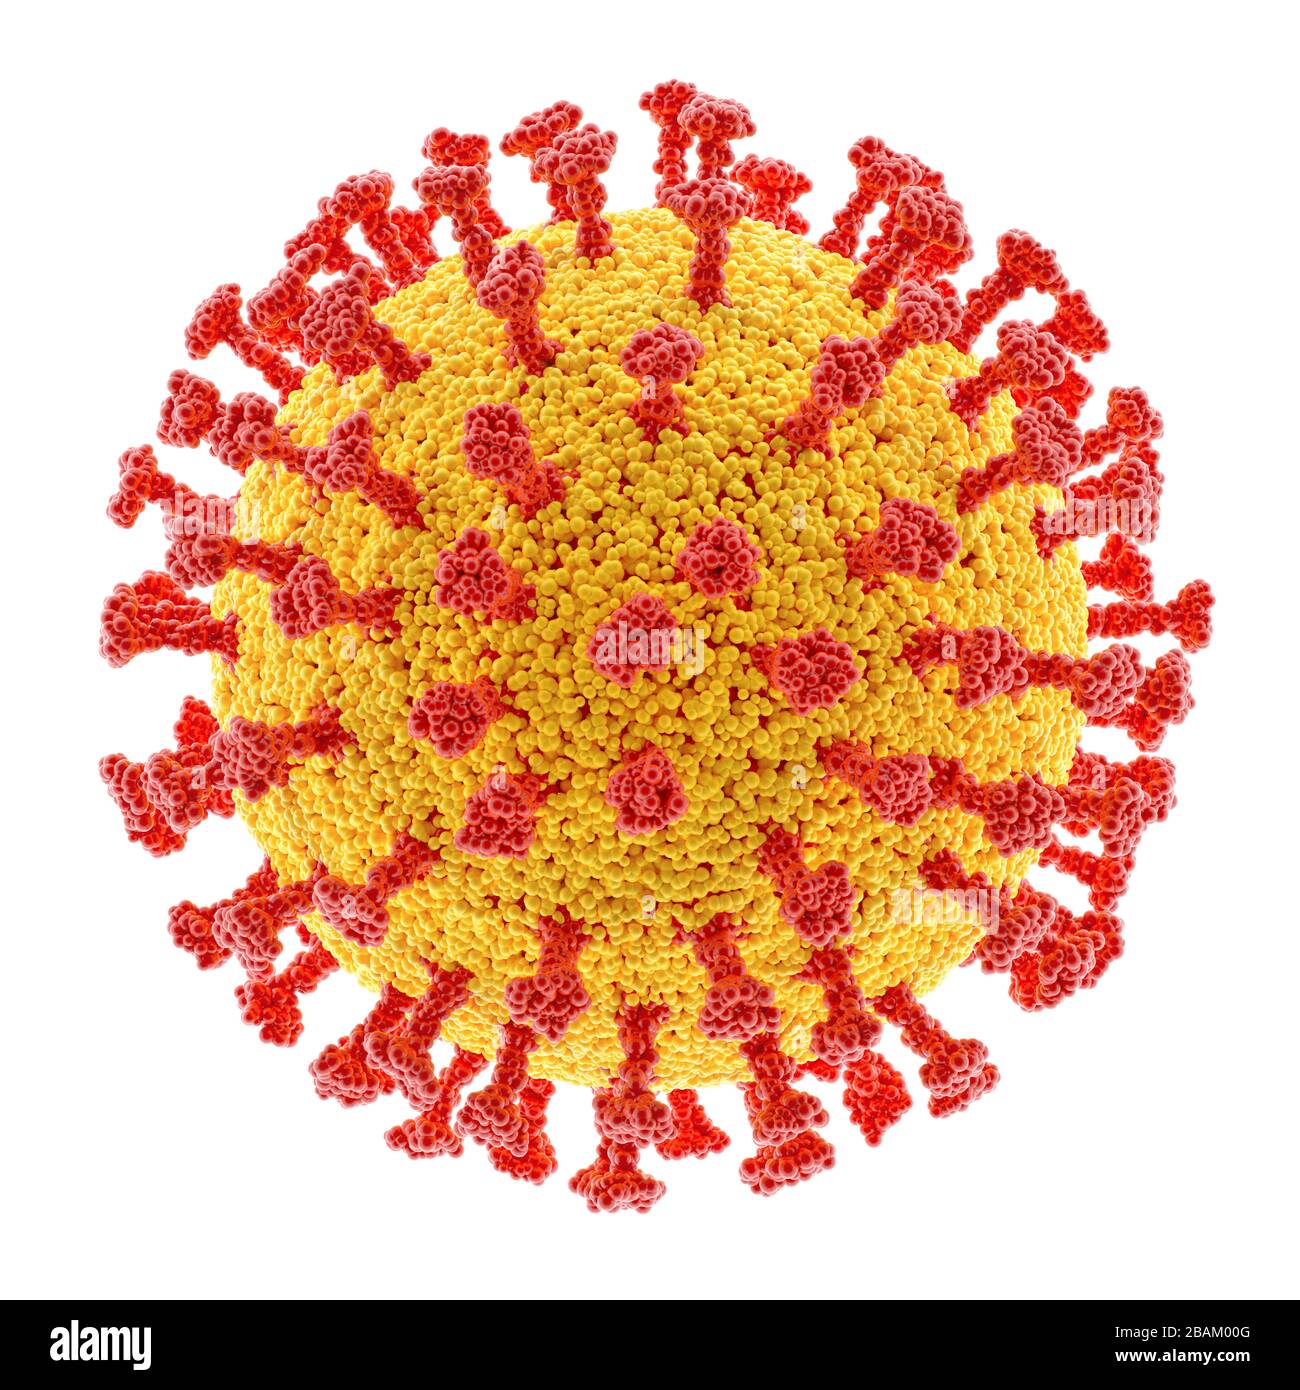 Virus concettuale con percorso di ritaglio incluso. La struttura di un virus. Covid-19, Coronavirus, influenza, HIV. Immagine concettuale delle malattie infettive. 3 Foto Stock